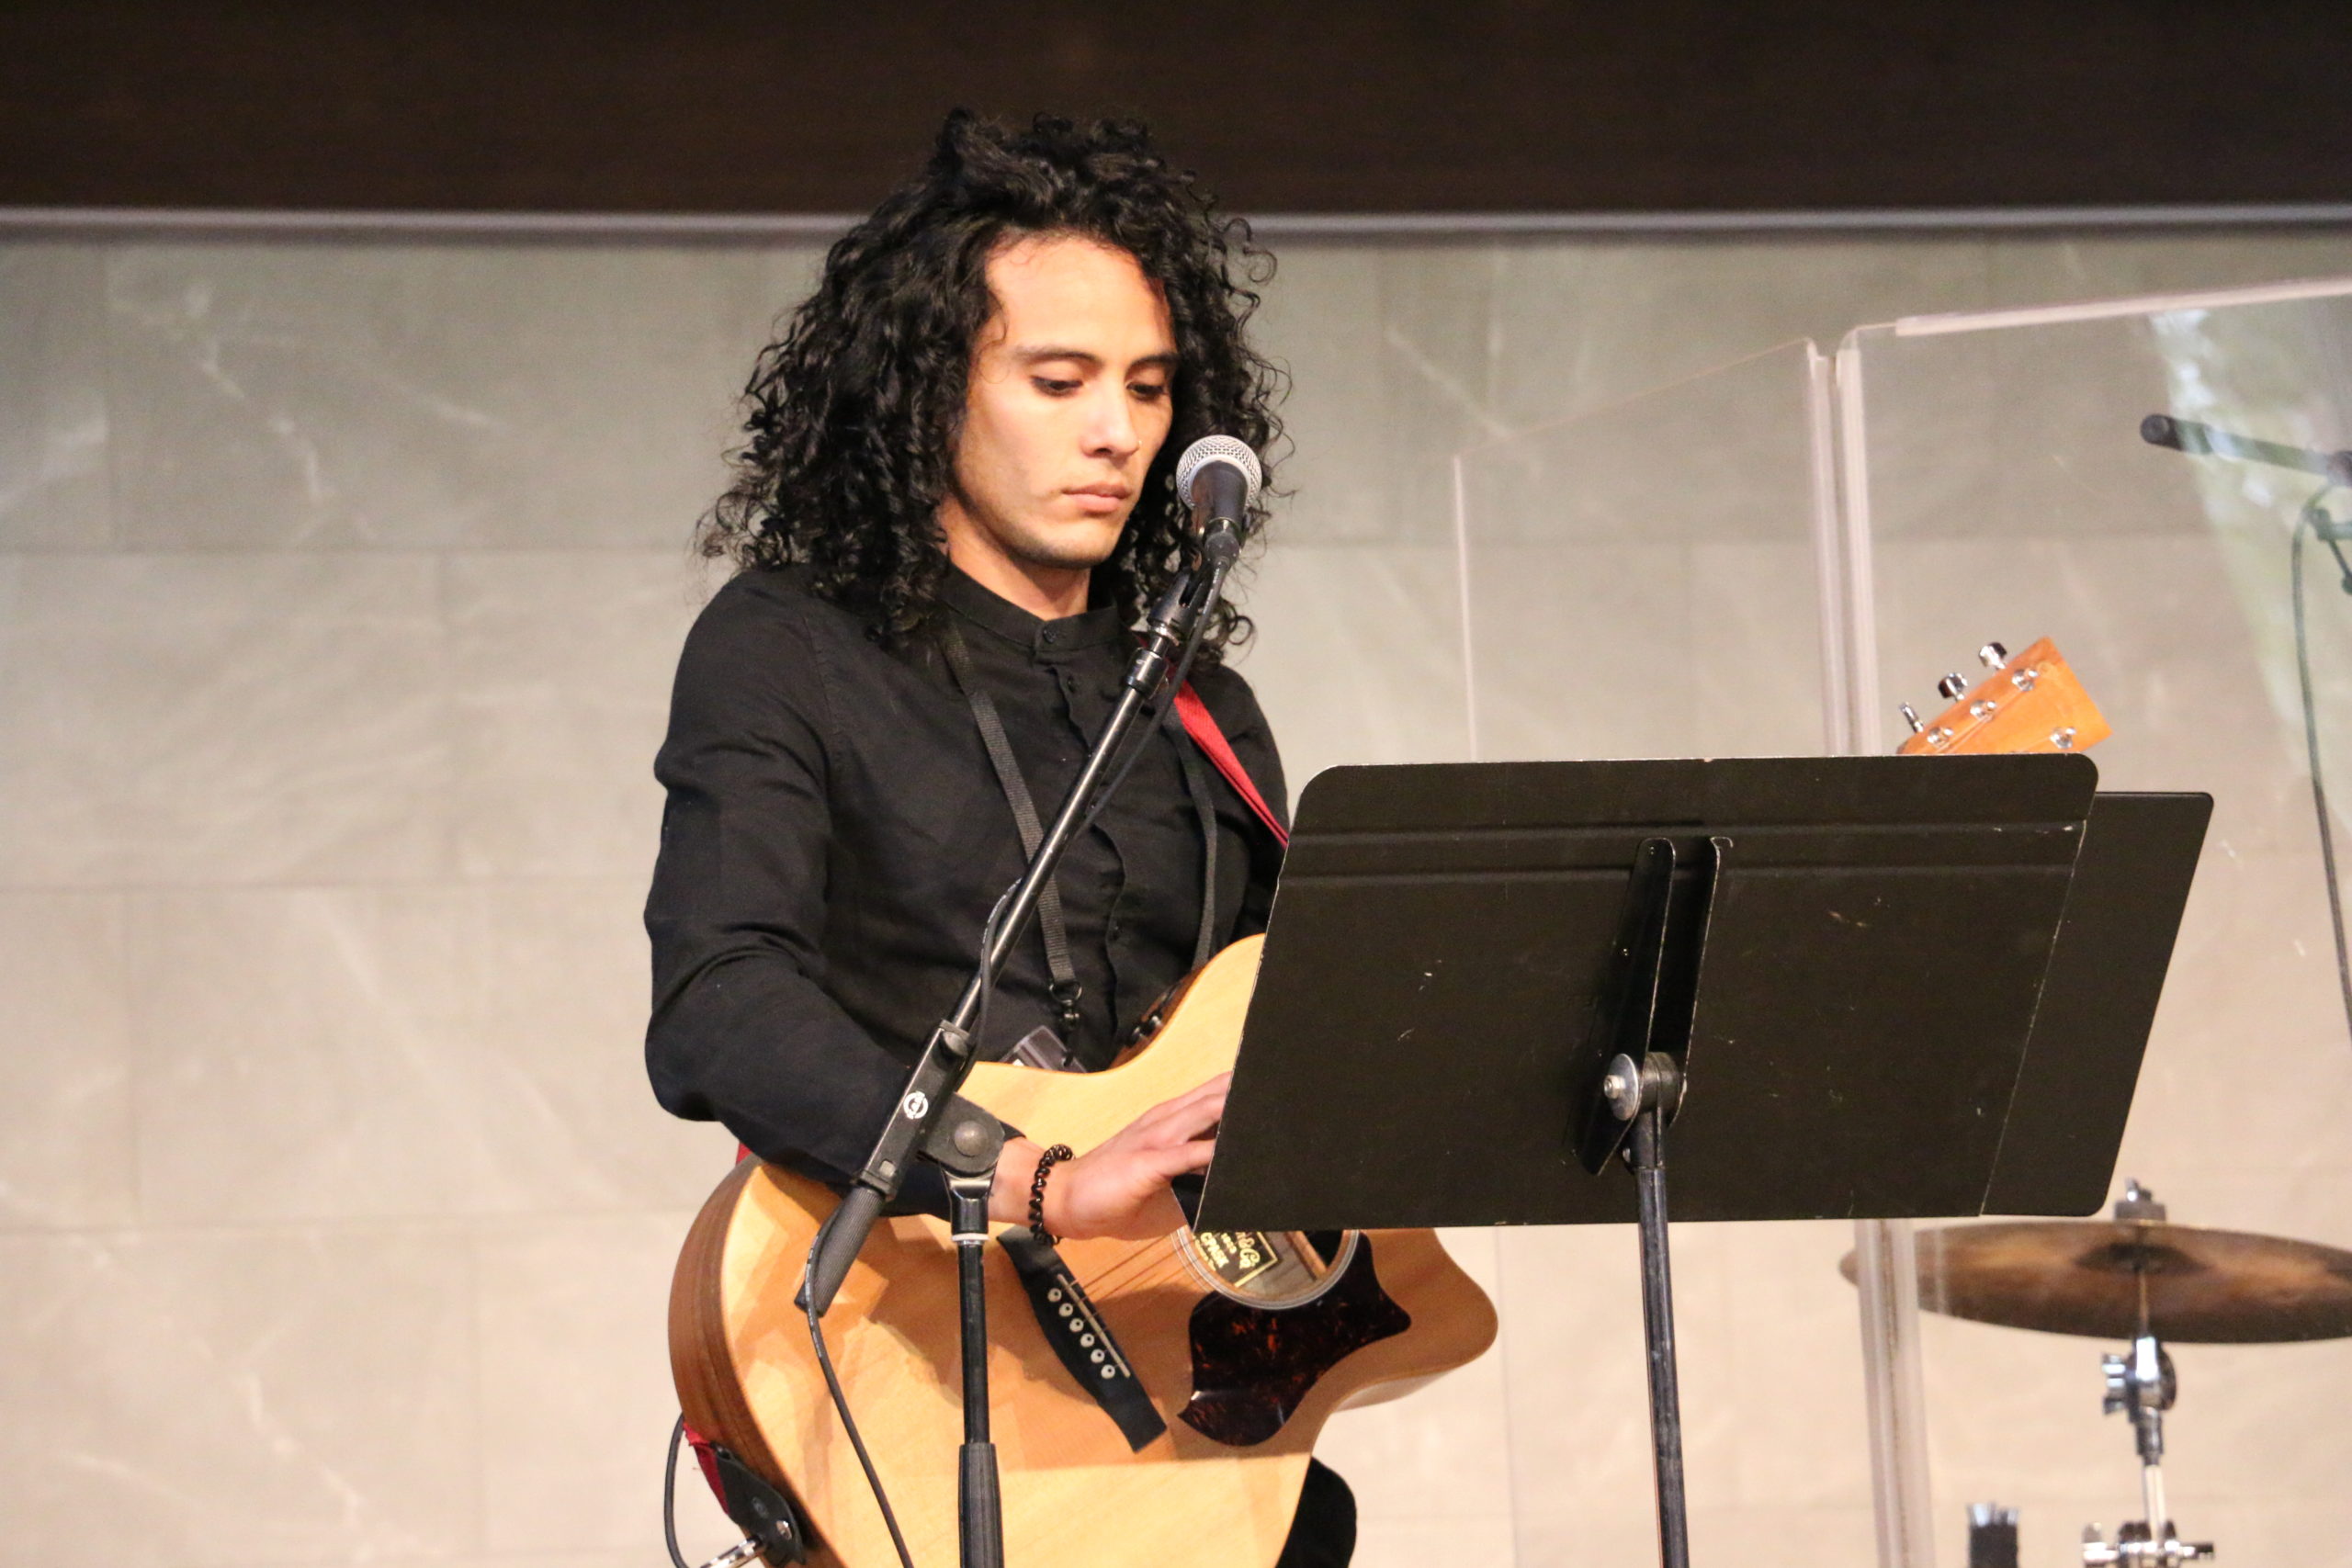 Guy playing guitar during worship